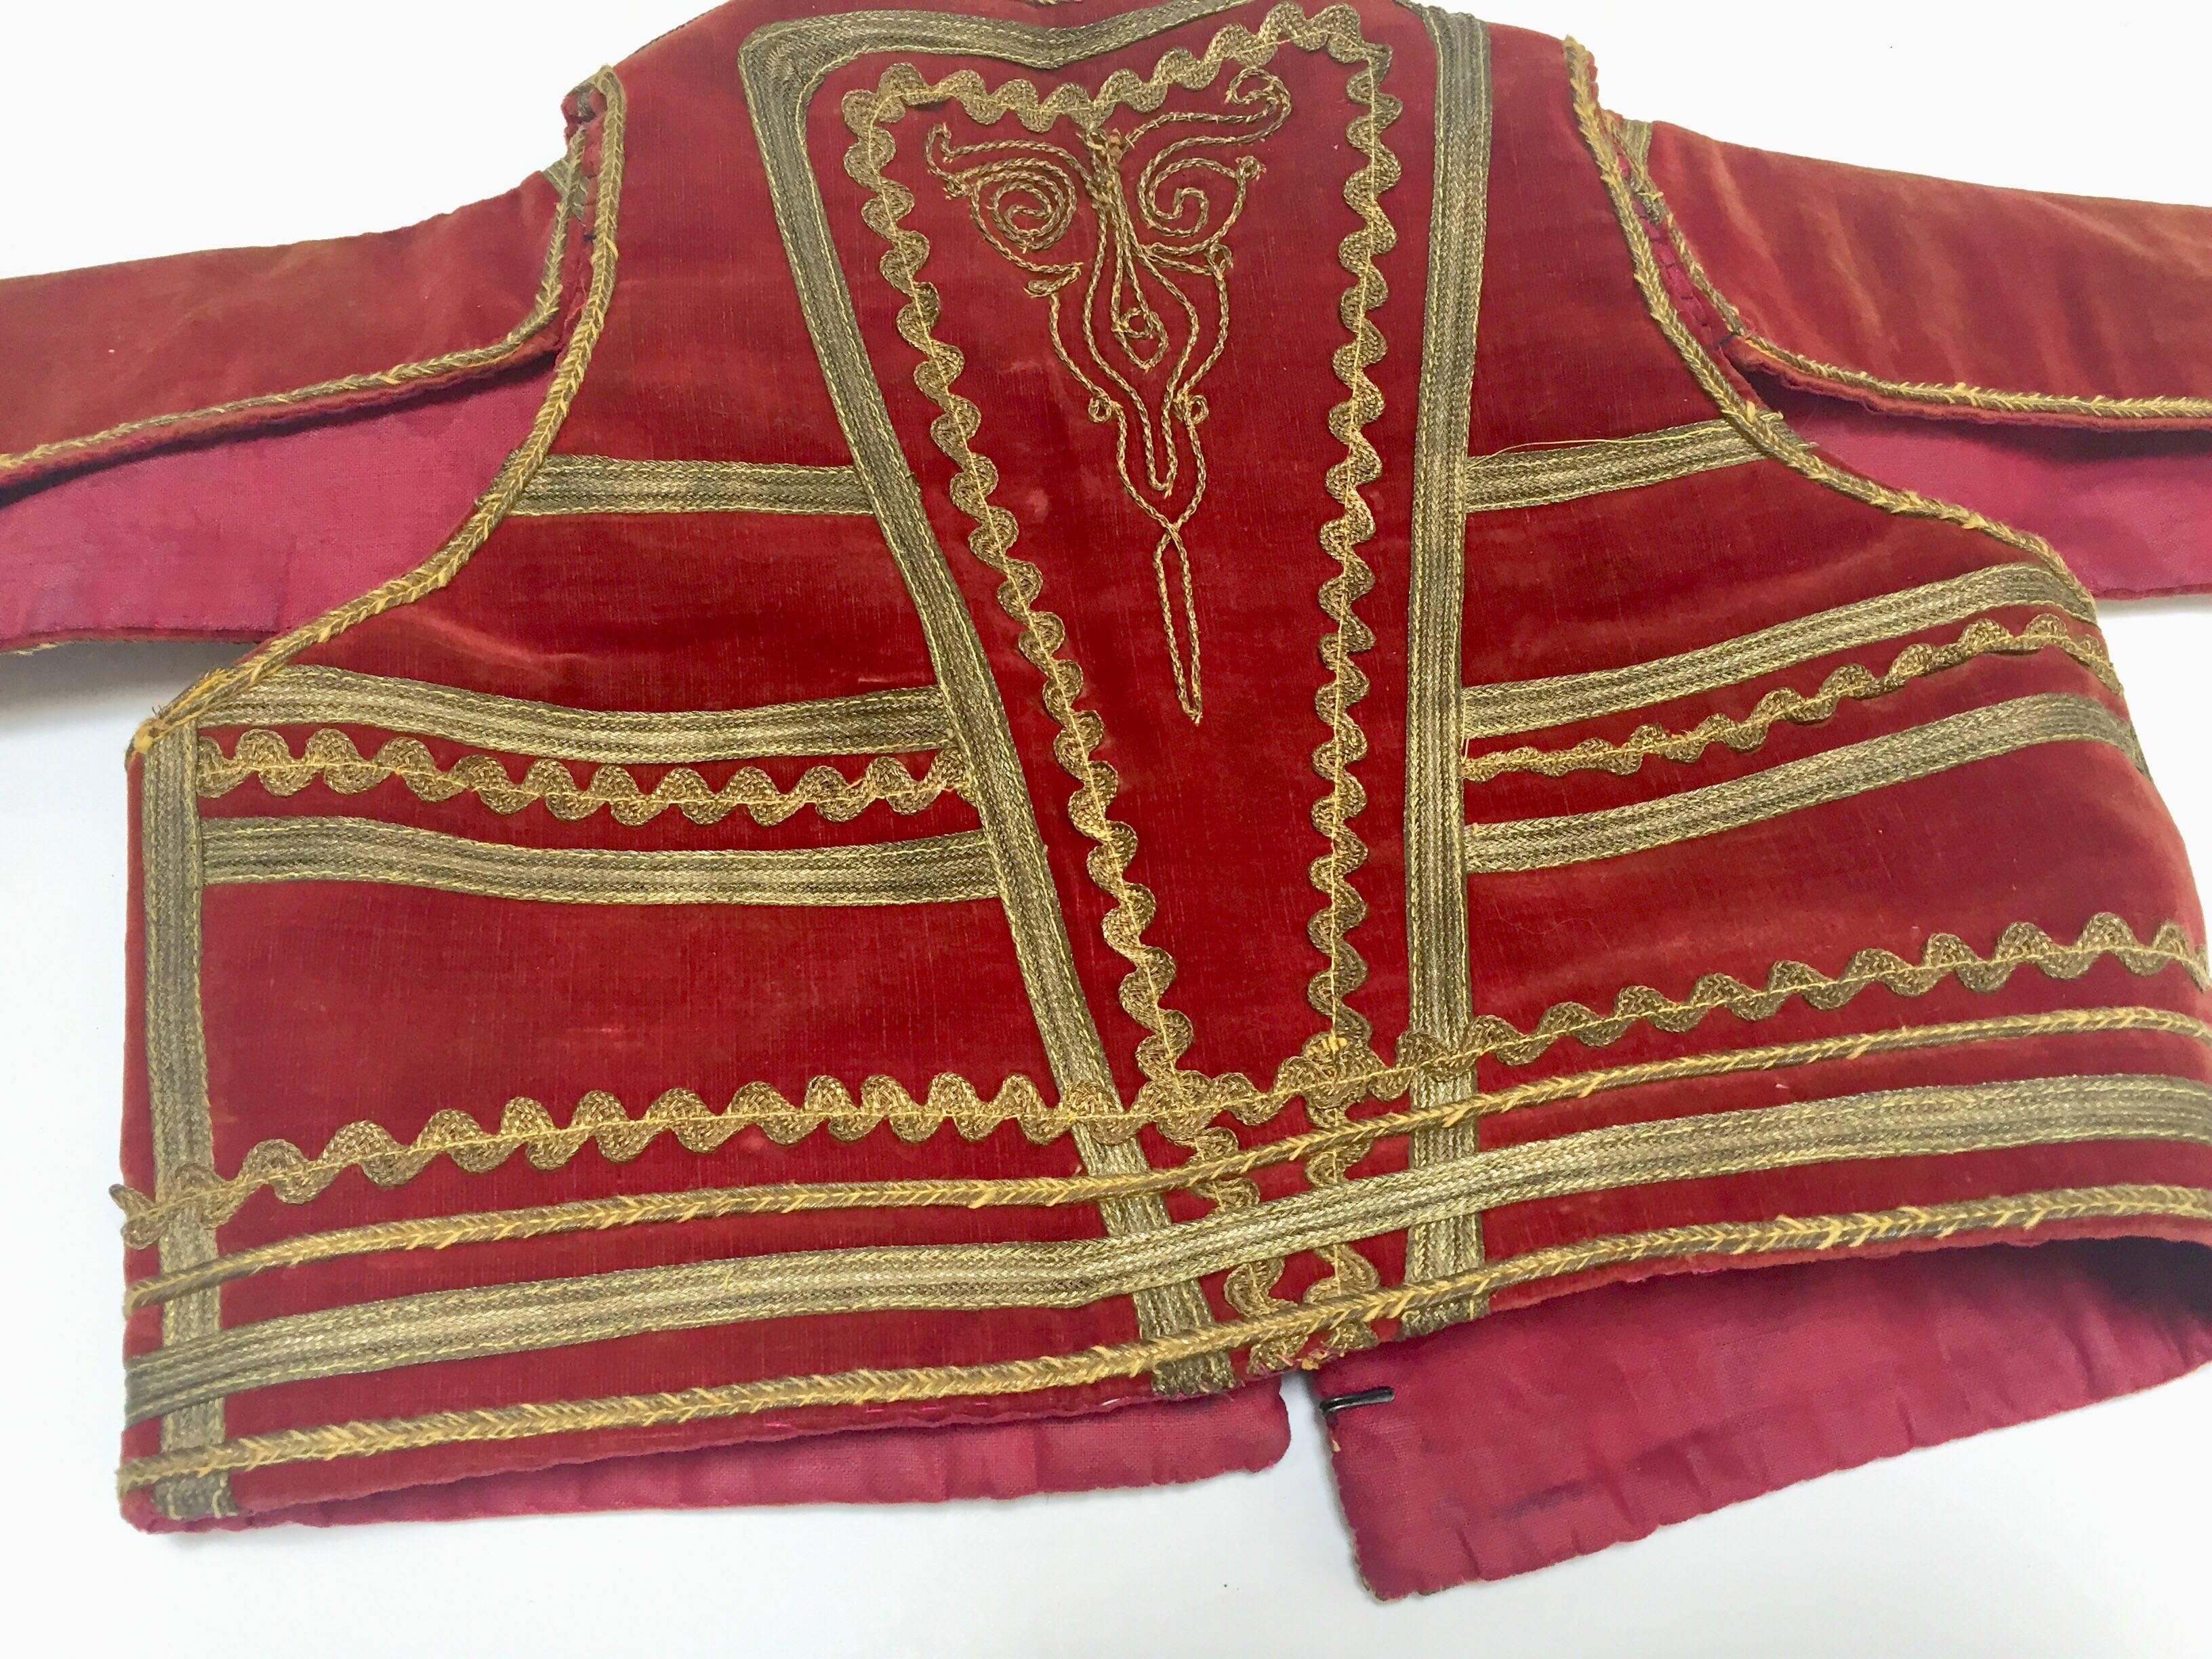 Antique Red Velvet Efe Zeybek Jacket Turkish Vest with Gold Embroidery For Sale 3